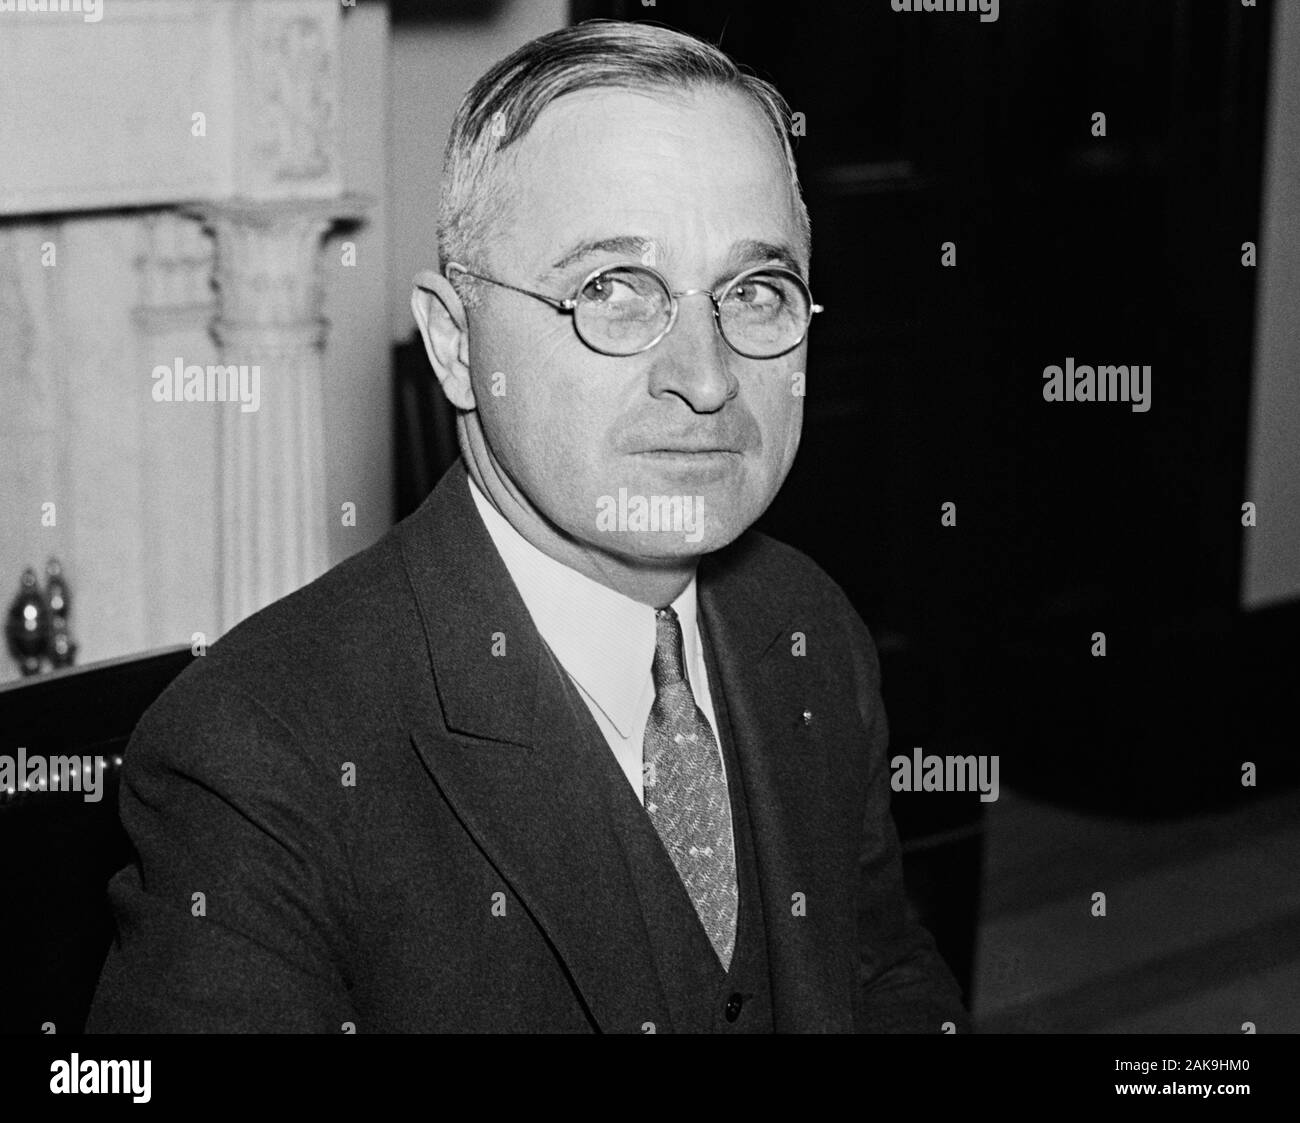 Vintage photo portrait du Missouri - Le sénateur et futur président - Harry S Truman. Circa 1935 Photo par Harris et Ewing. Truman (1884 - 1972) allait devenir le 33e président des États-Unis (1945 - 1953). Banque D'Images